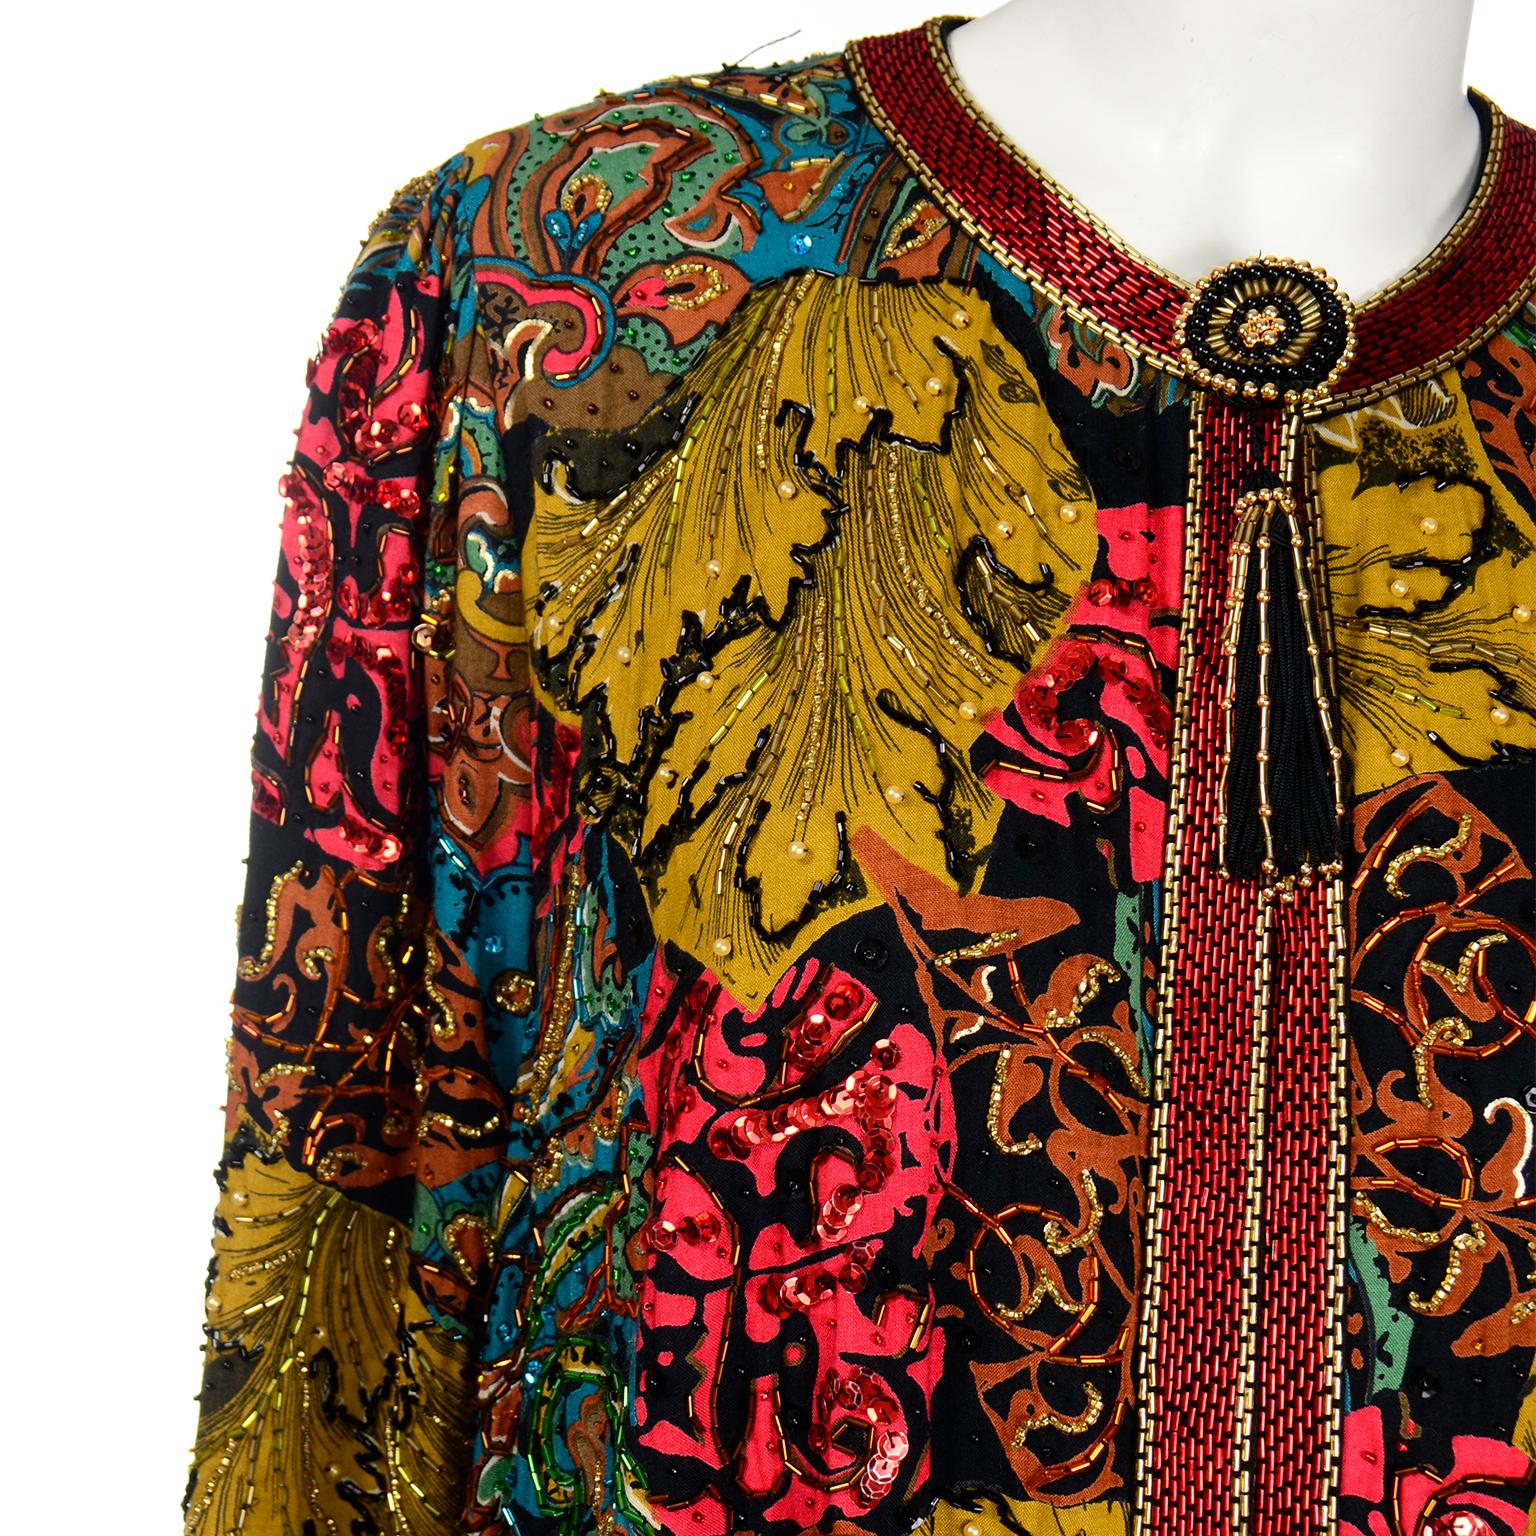 Vintage Diane Freis Beaded Sequin Swing Jacket in Multi Colored Baroque Print 2